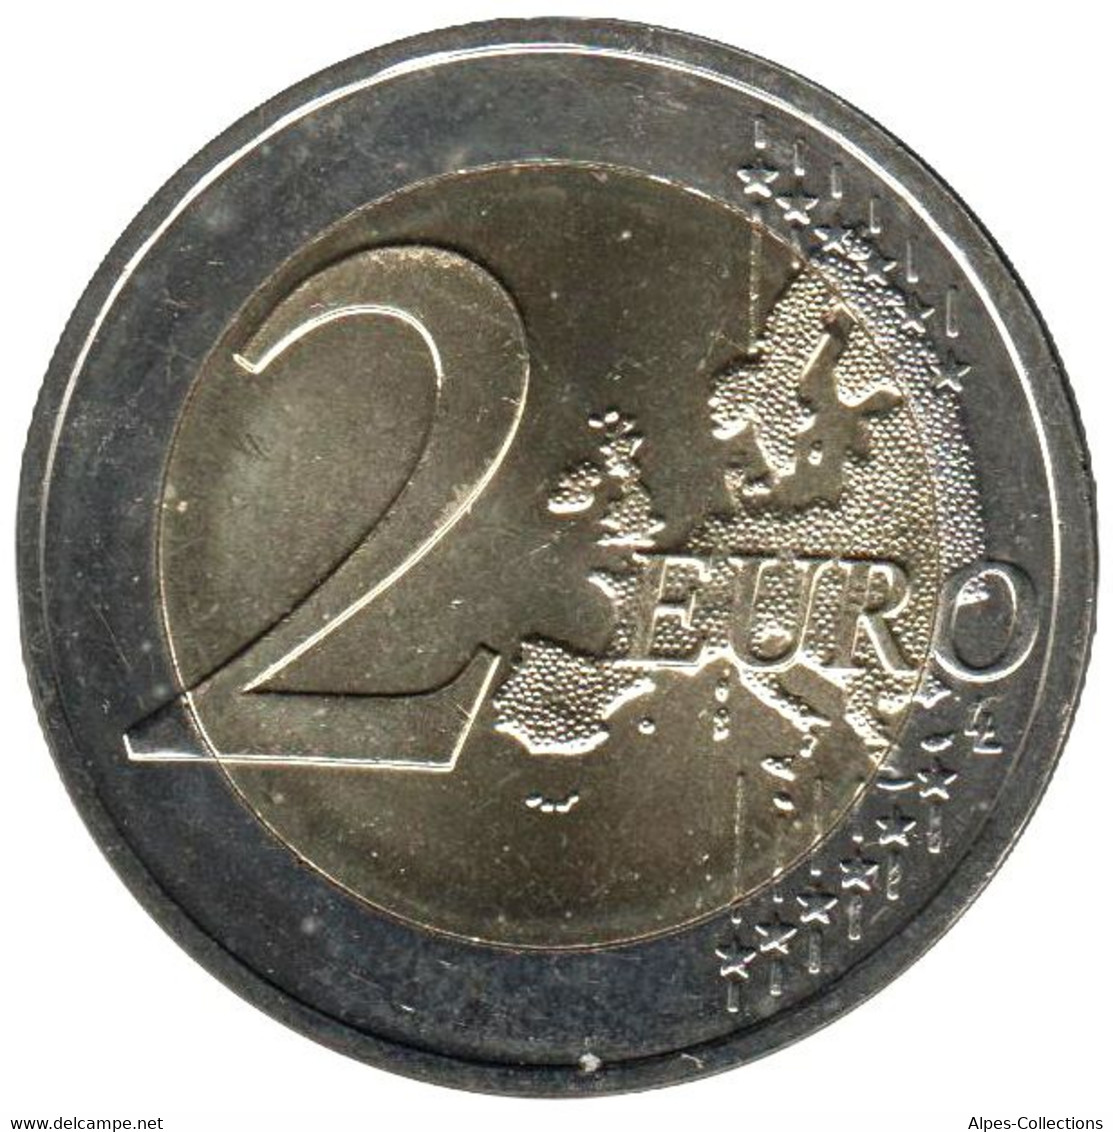 LI20019.1 - LITUANIE - 2 Euros Comm. Les Sutartines Chansons Lituaniennes - 2019 - Lituanie